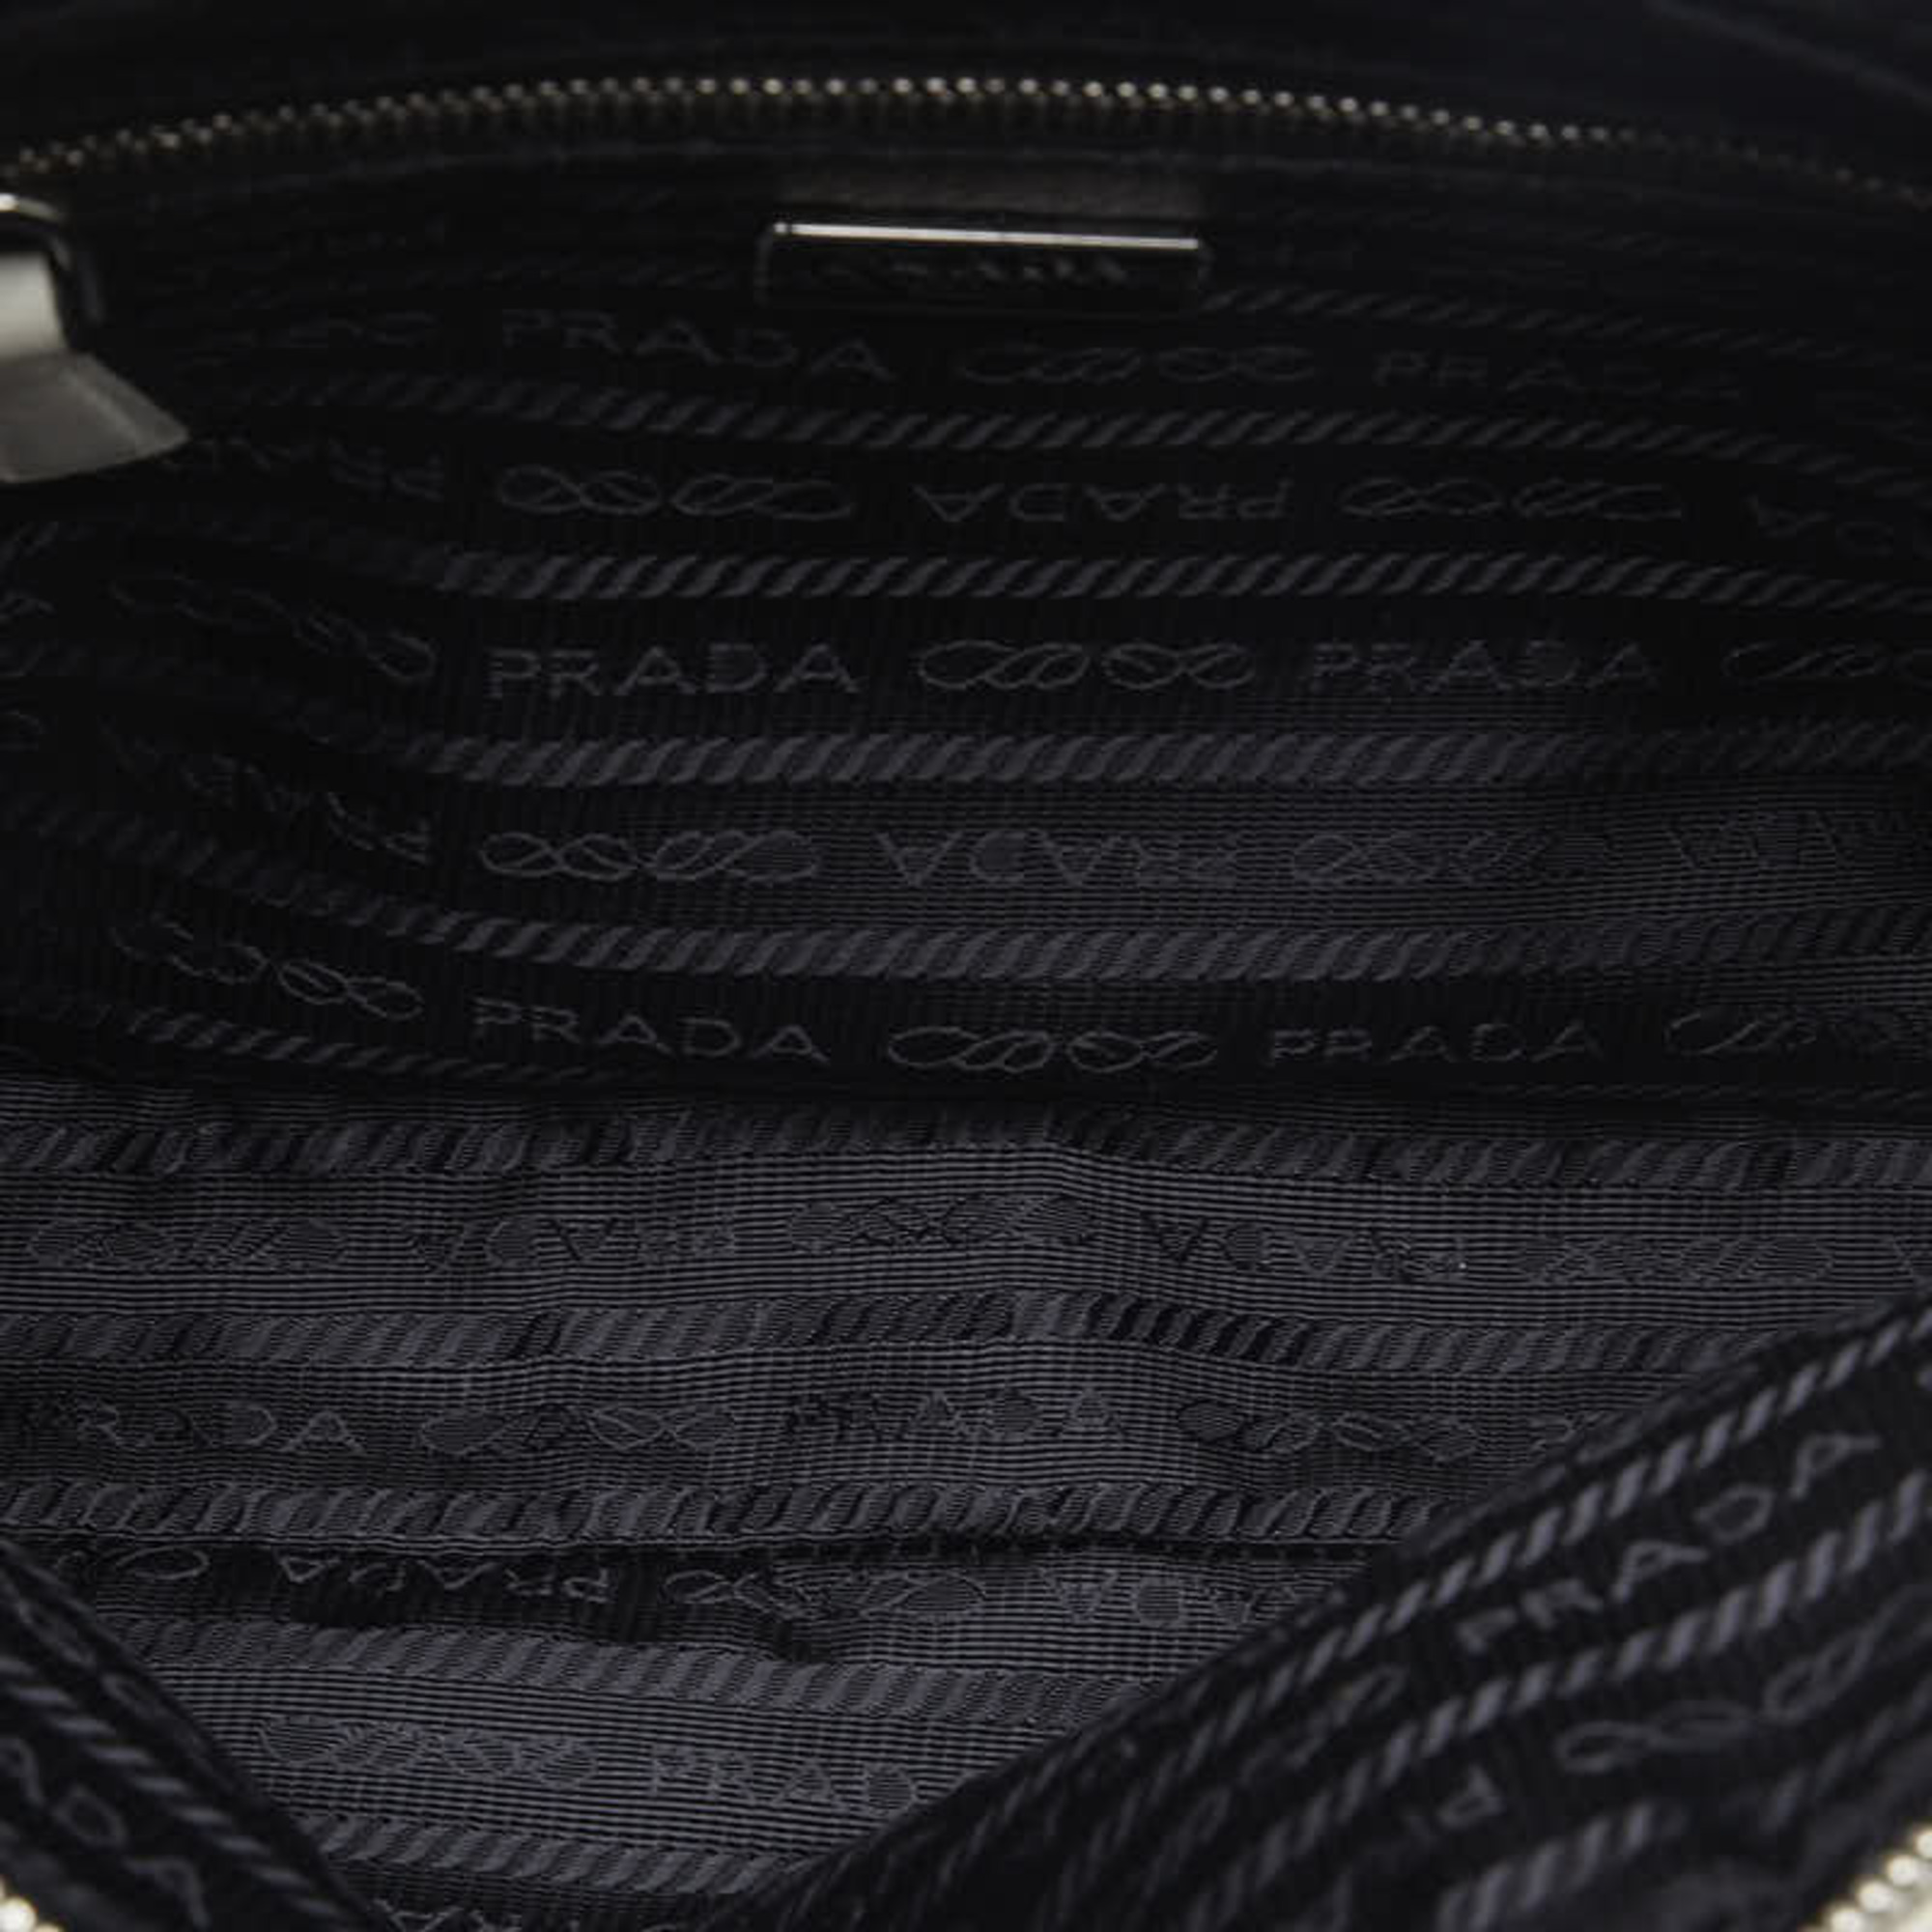 PRADA CITI FORI Punching Chain Handbag 1BB017 White Leather Women's